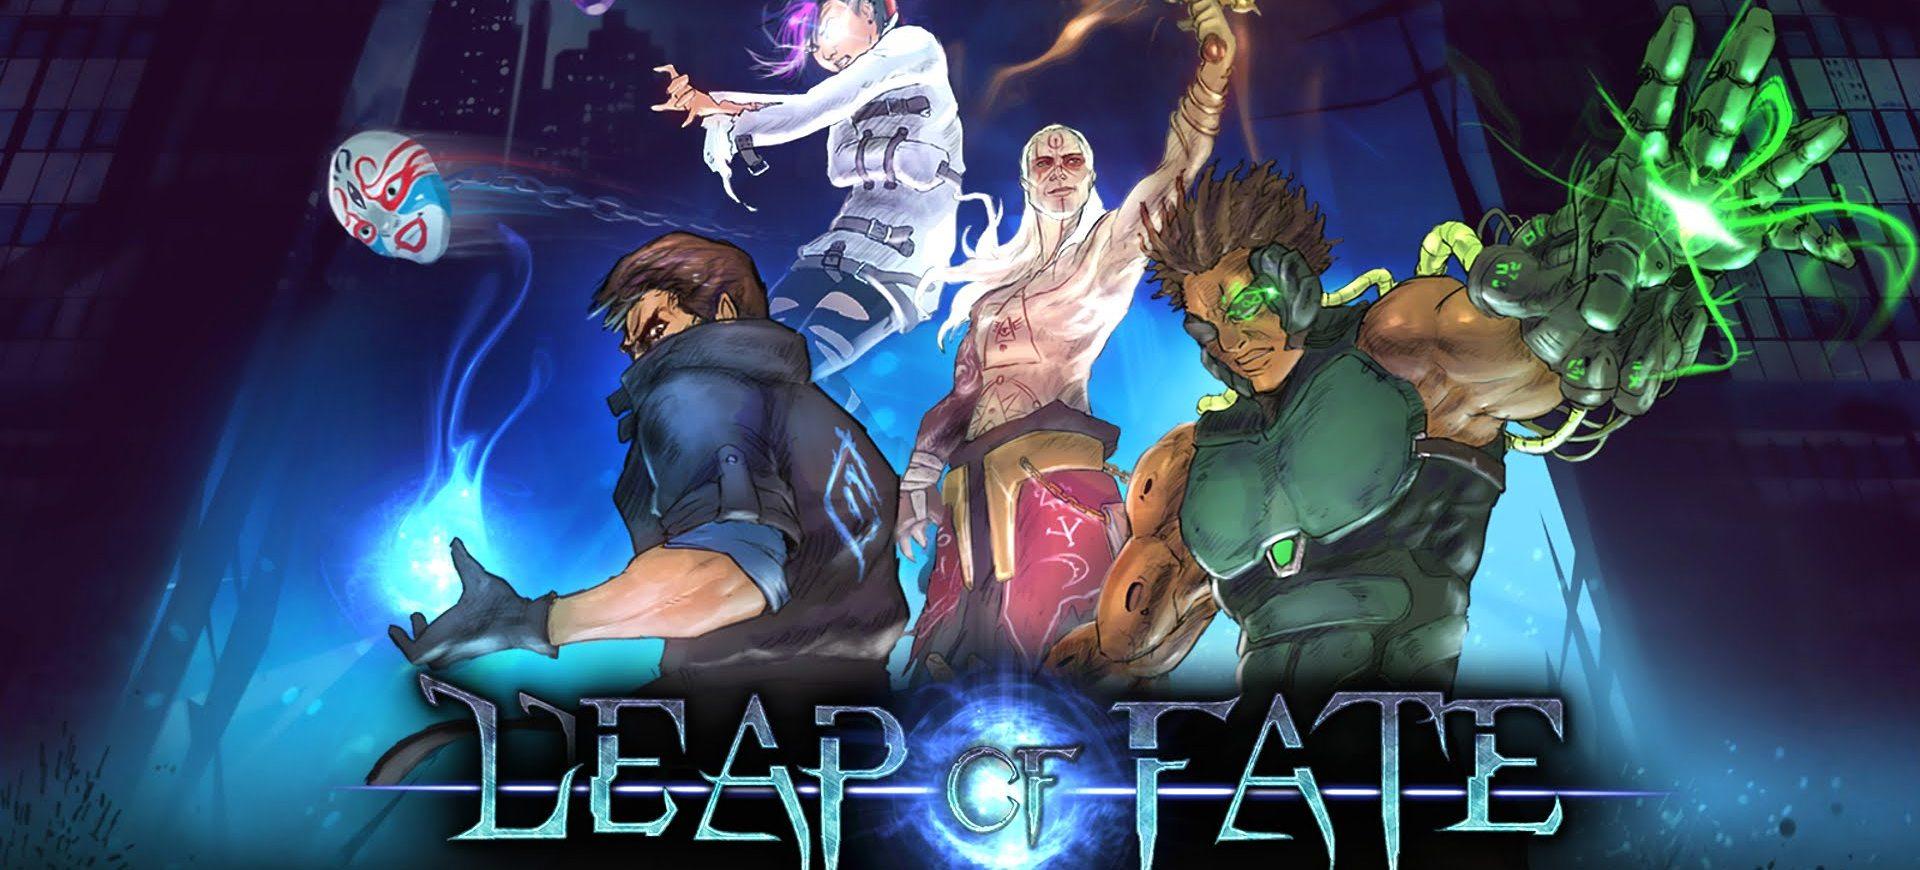 Leap of Fate - Đánh Giá Game